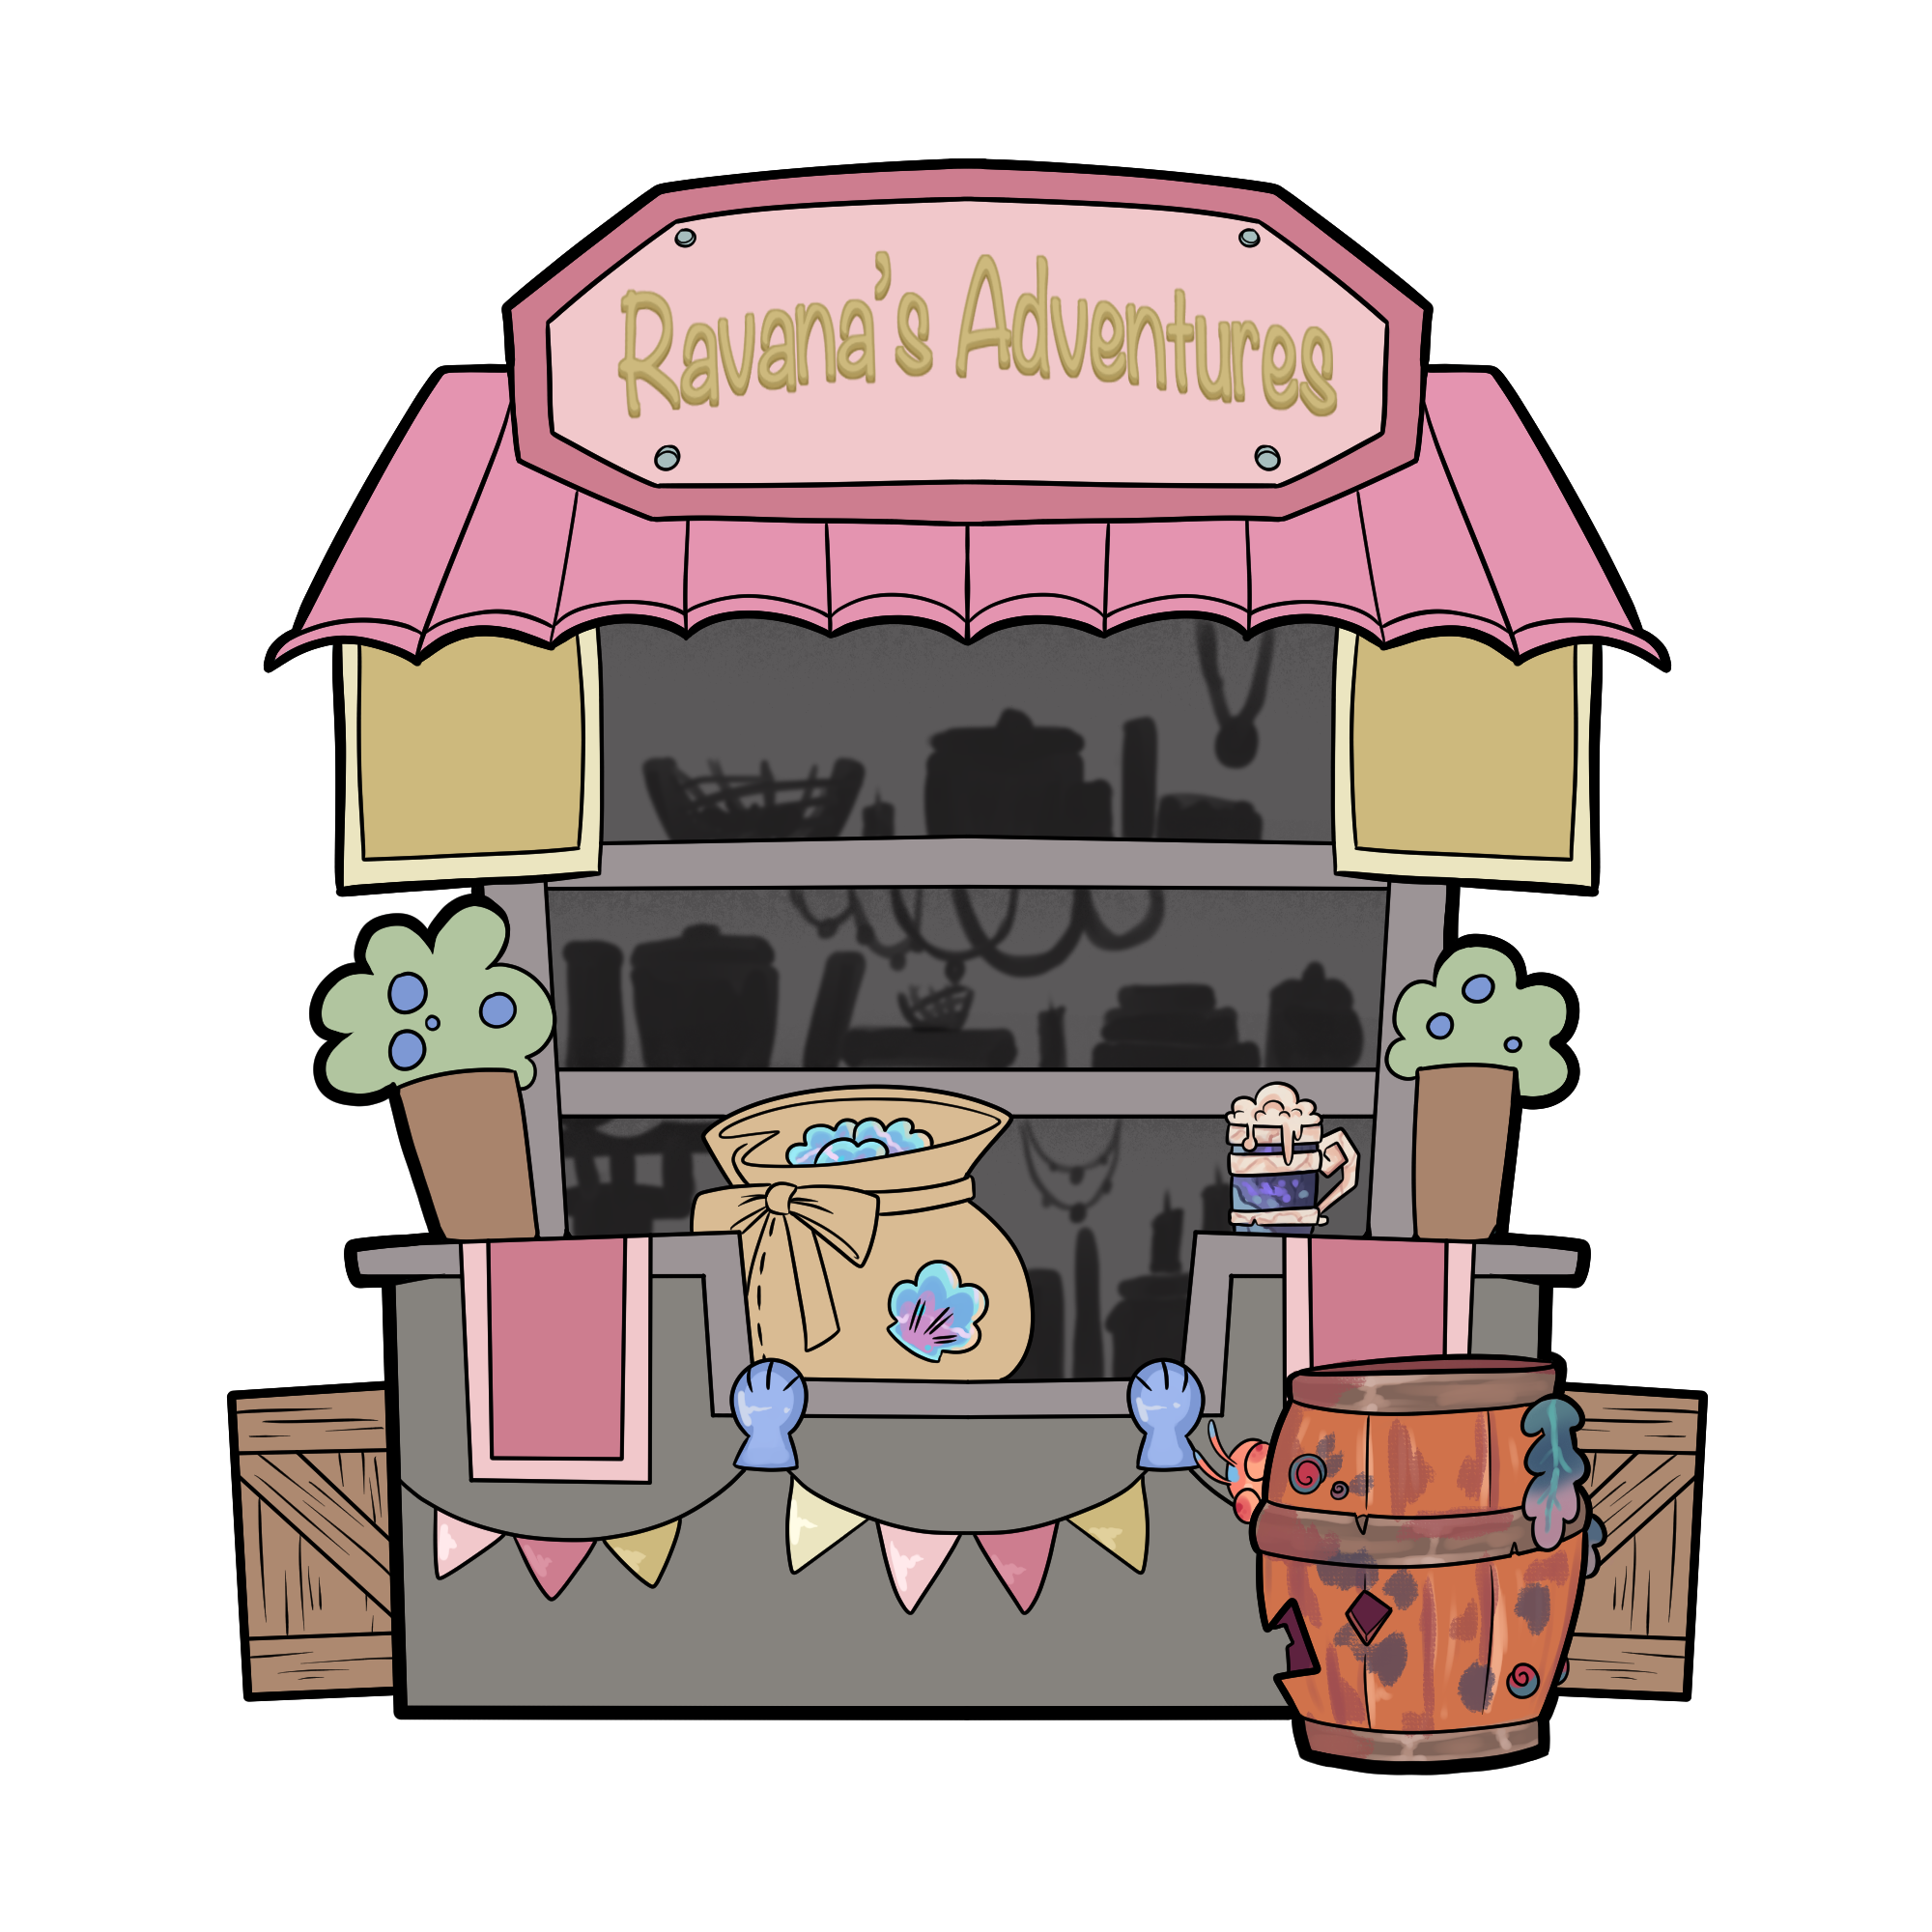 Ravana’s adventures shop